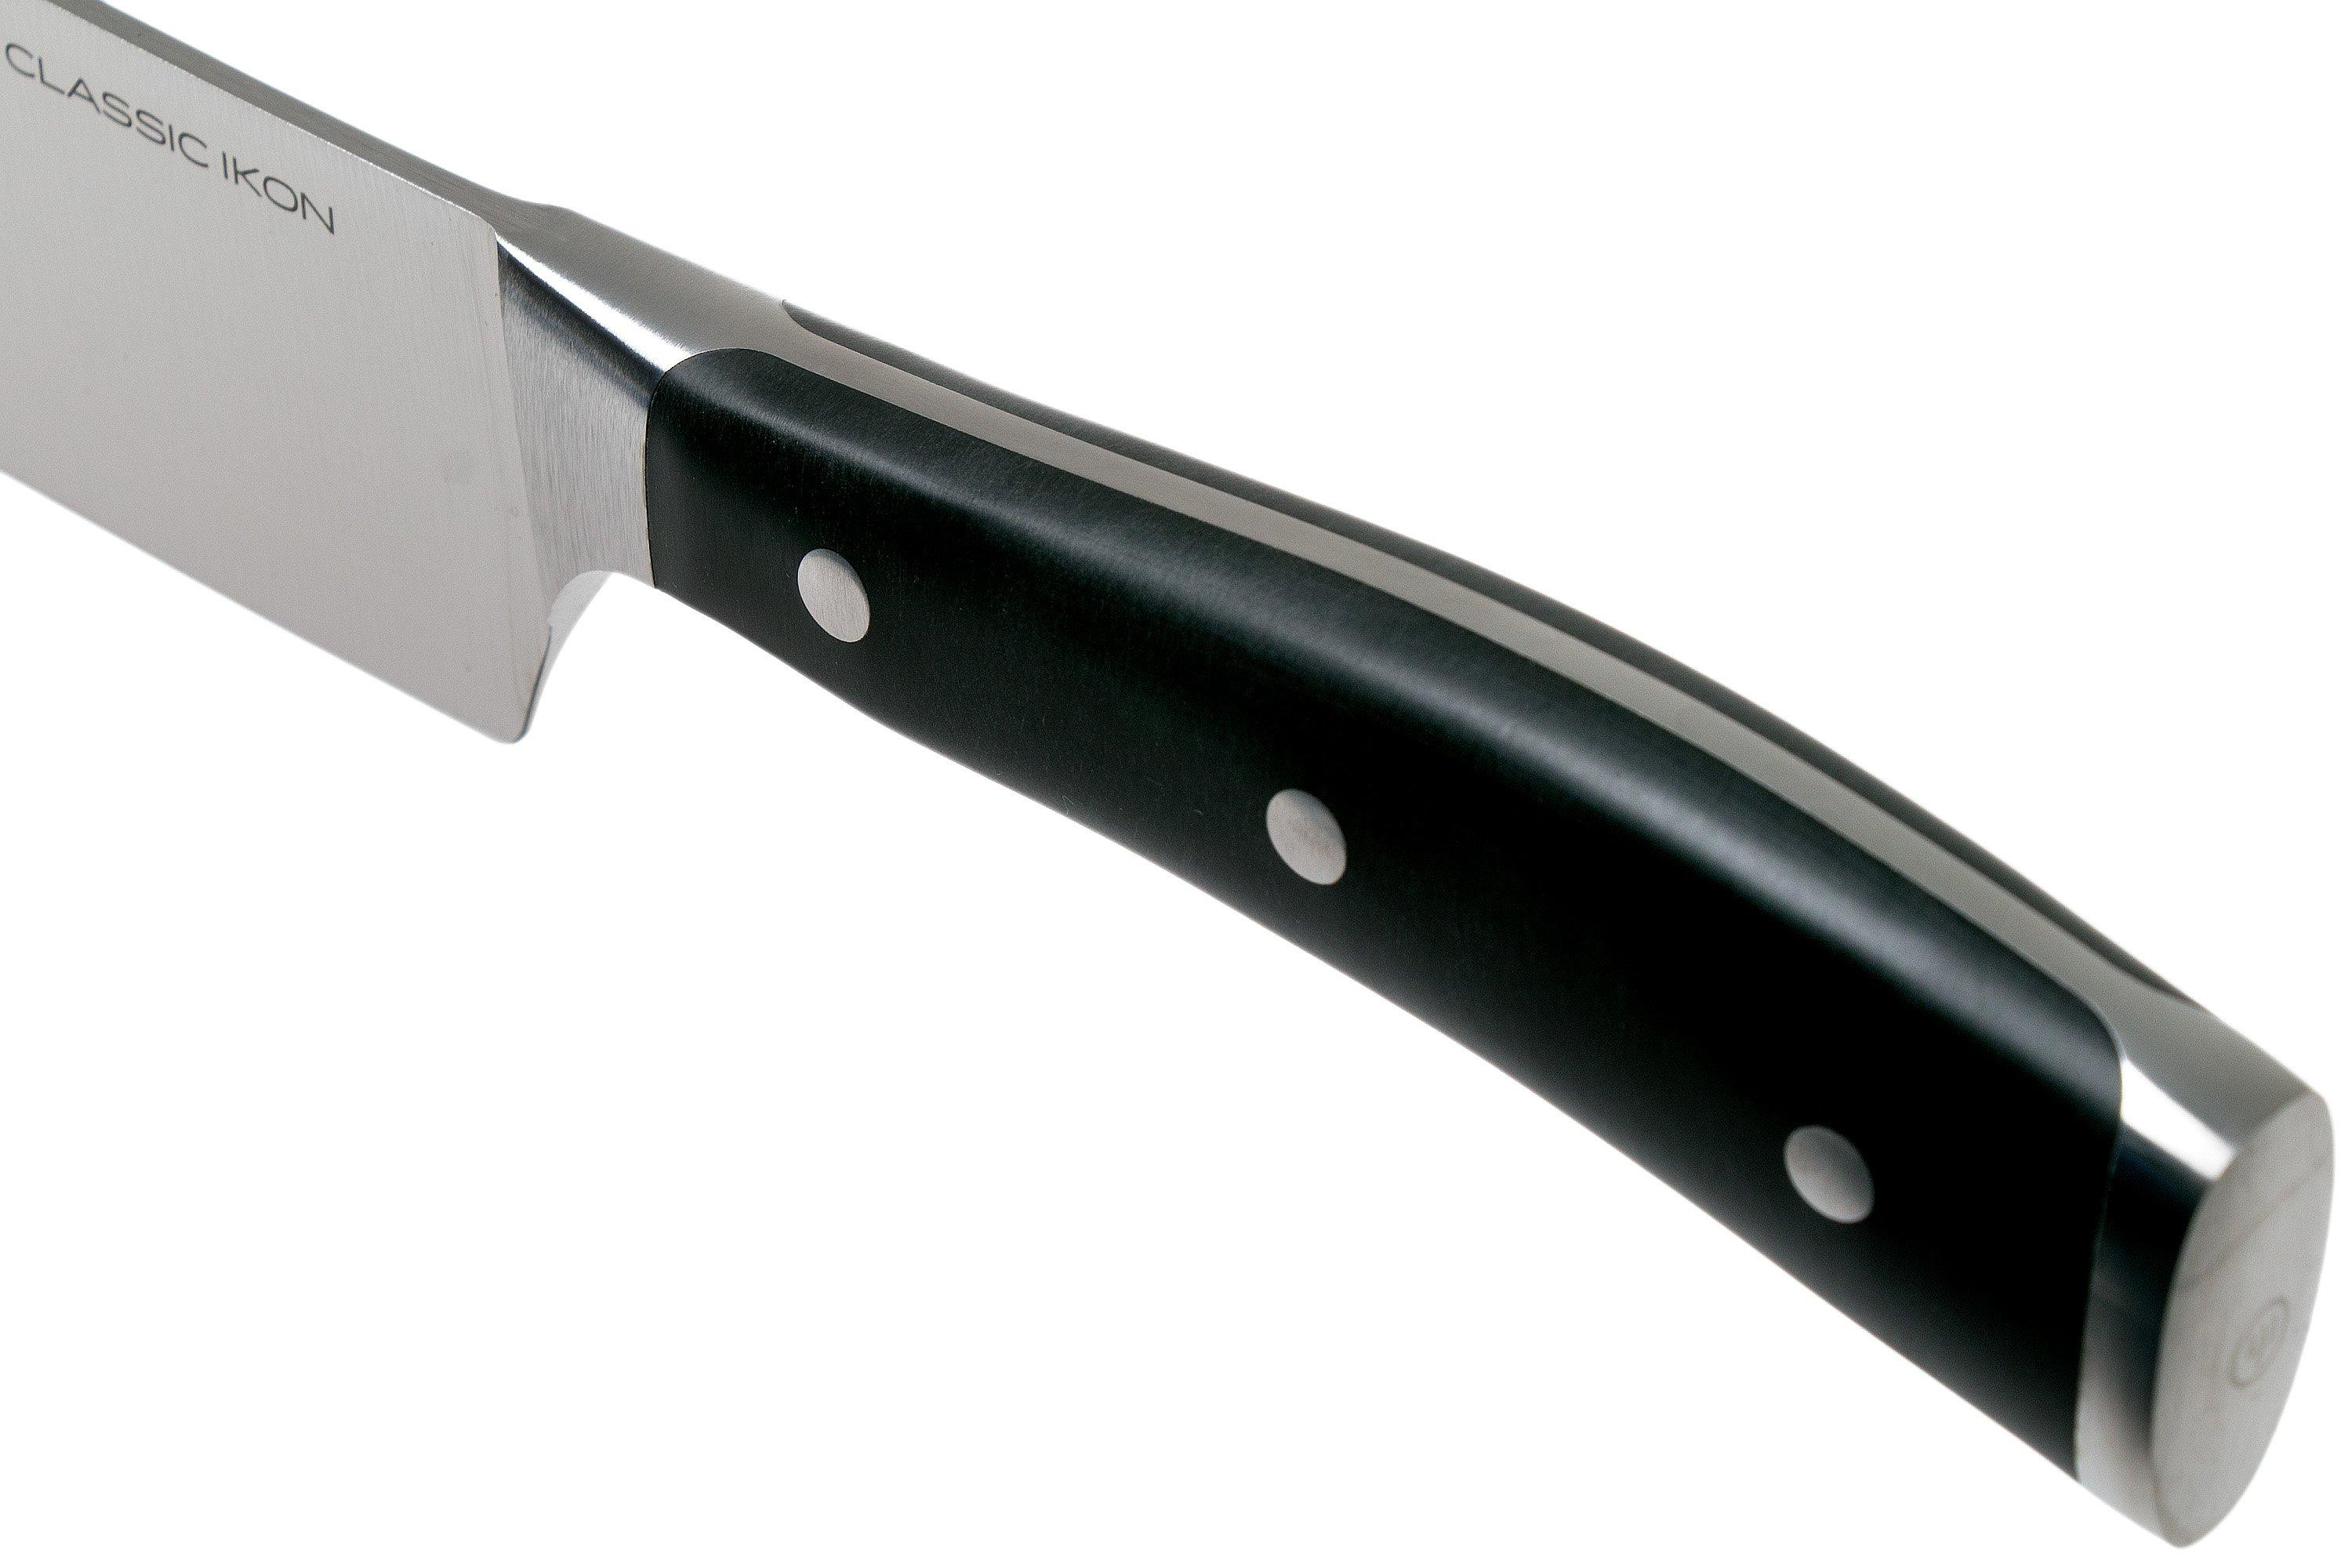 Couteau à éplucher Wüsthof Classic forgé 7cm